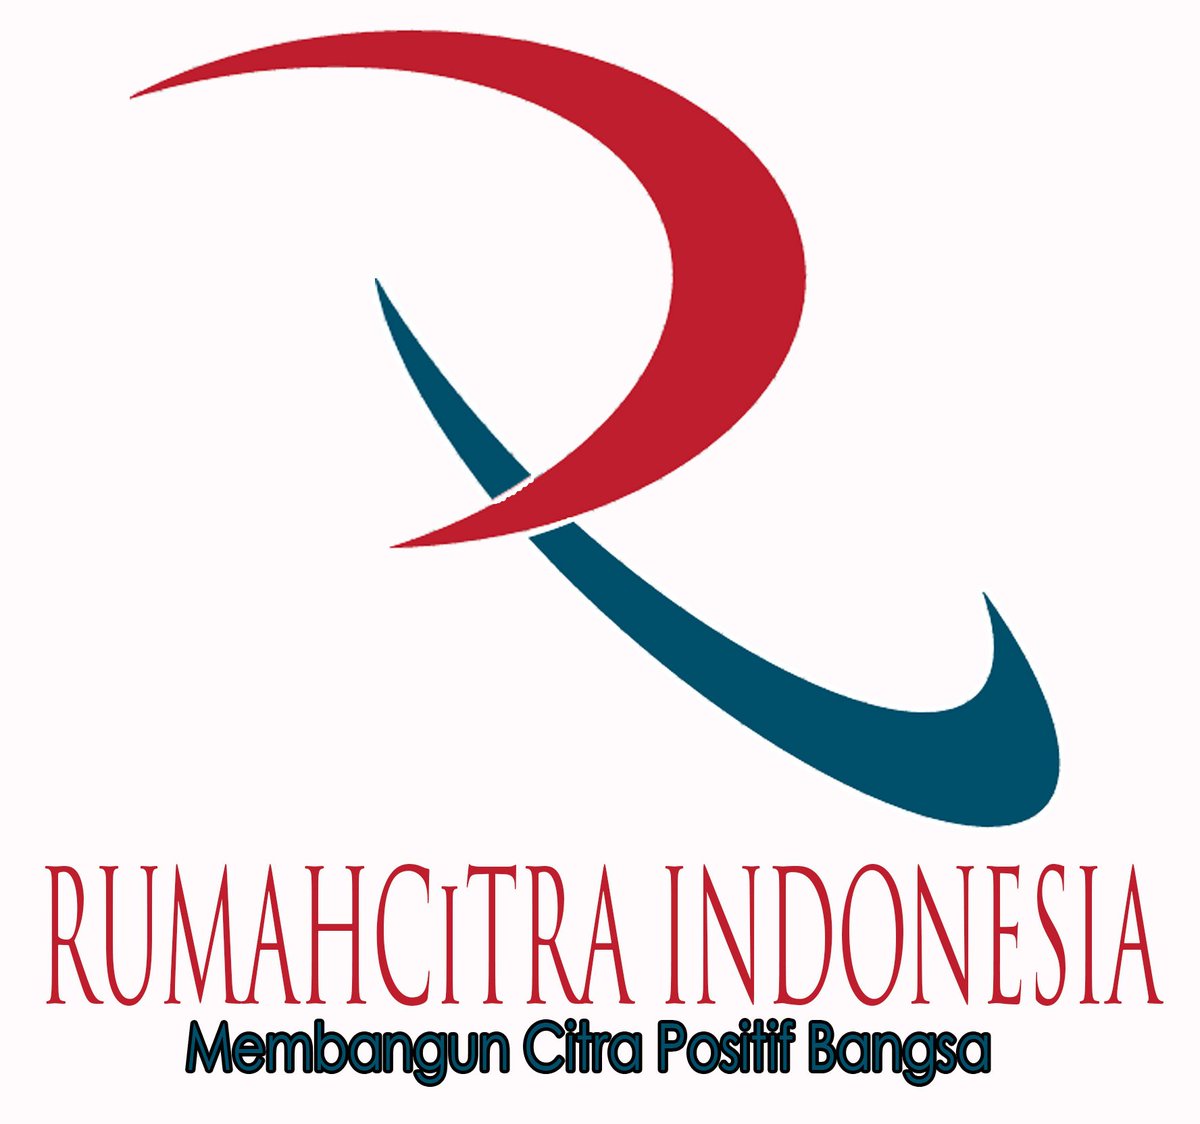 lembaga-rumah-citra-indonesia